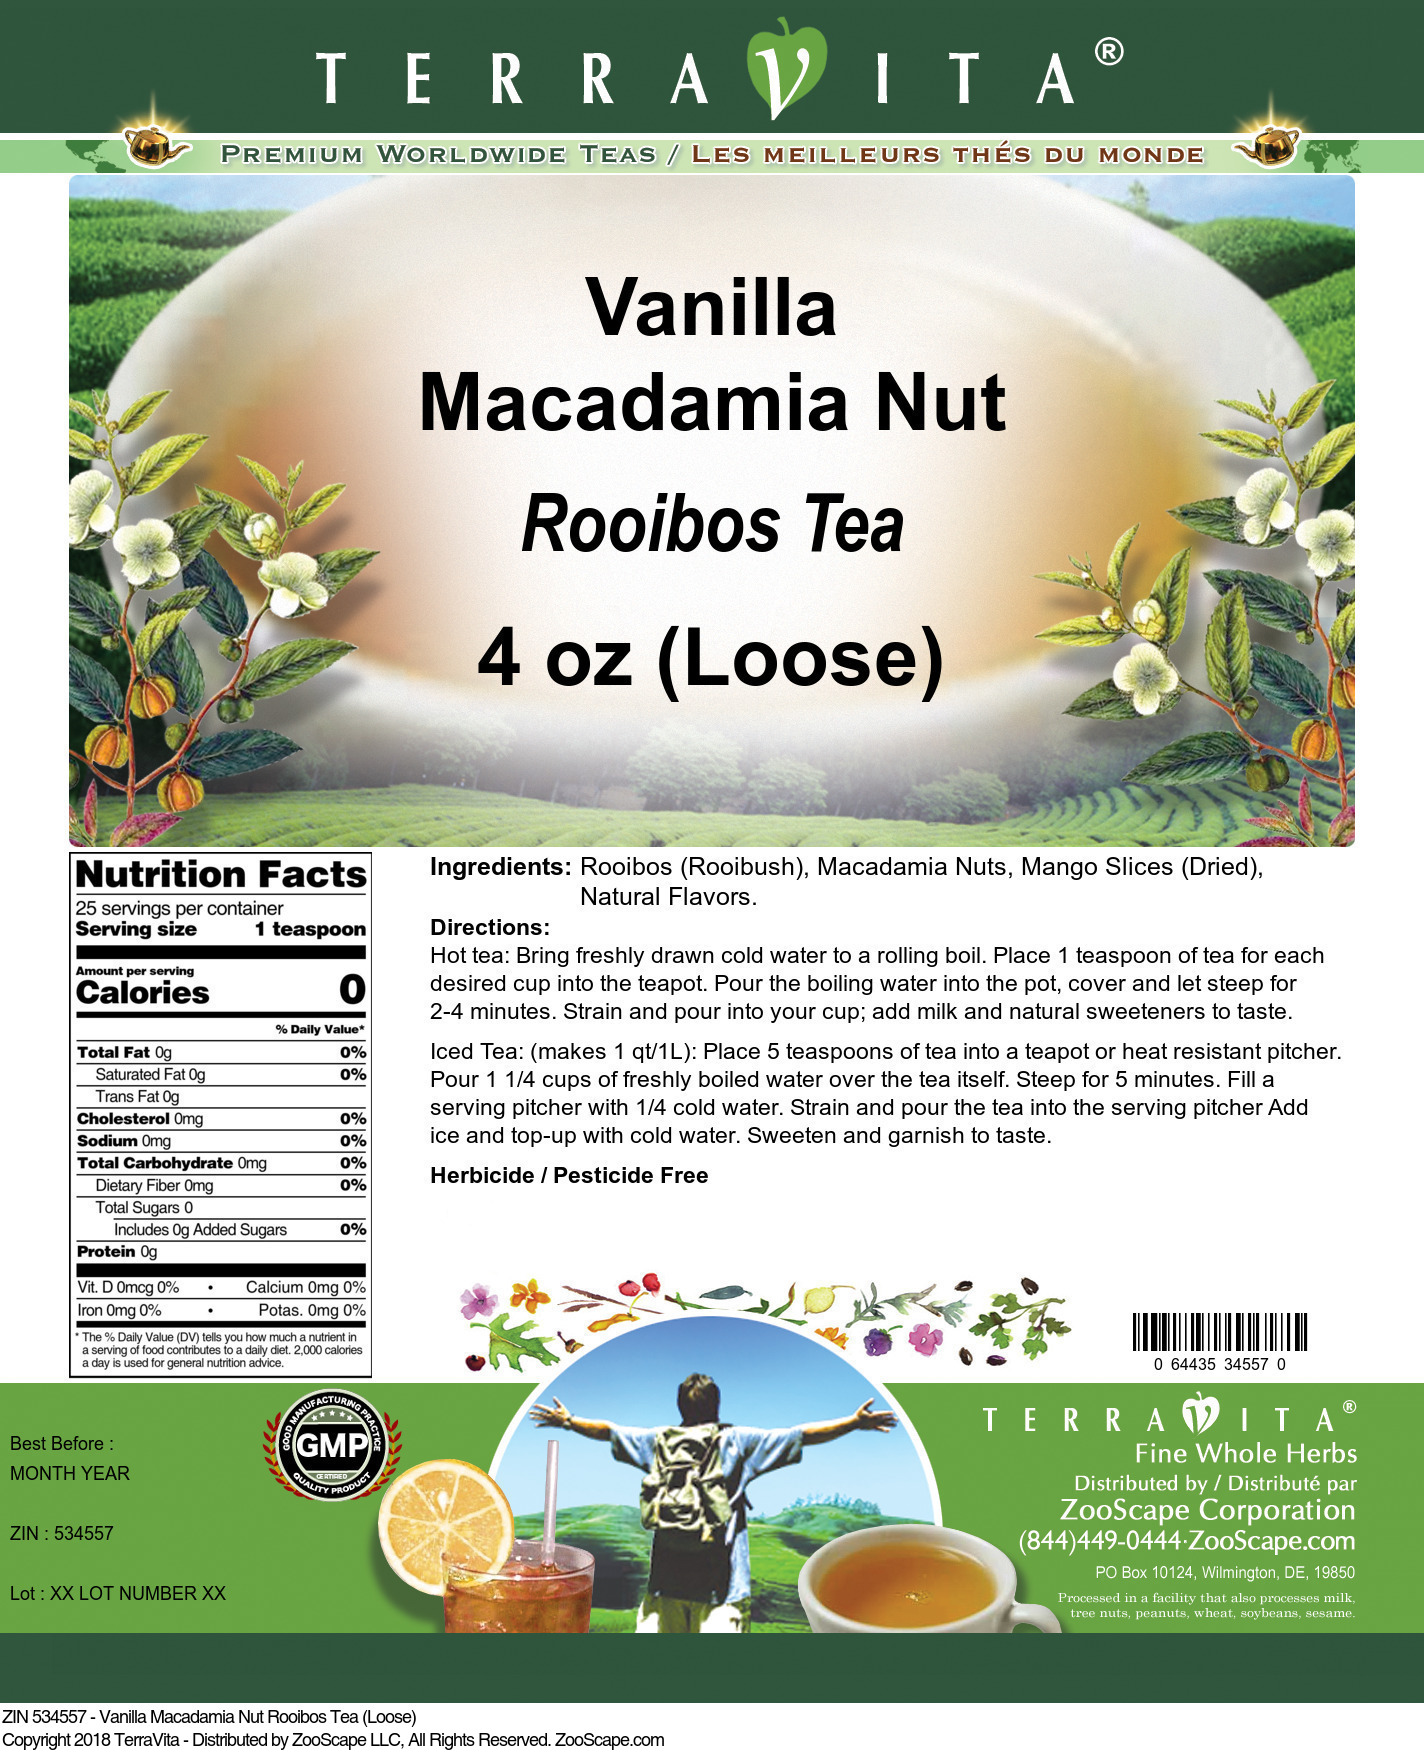 Vanilla Macadamia Nut Rooibos Tea (Loose) - Label